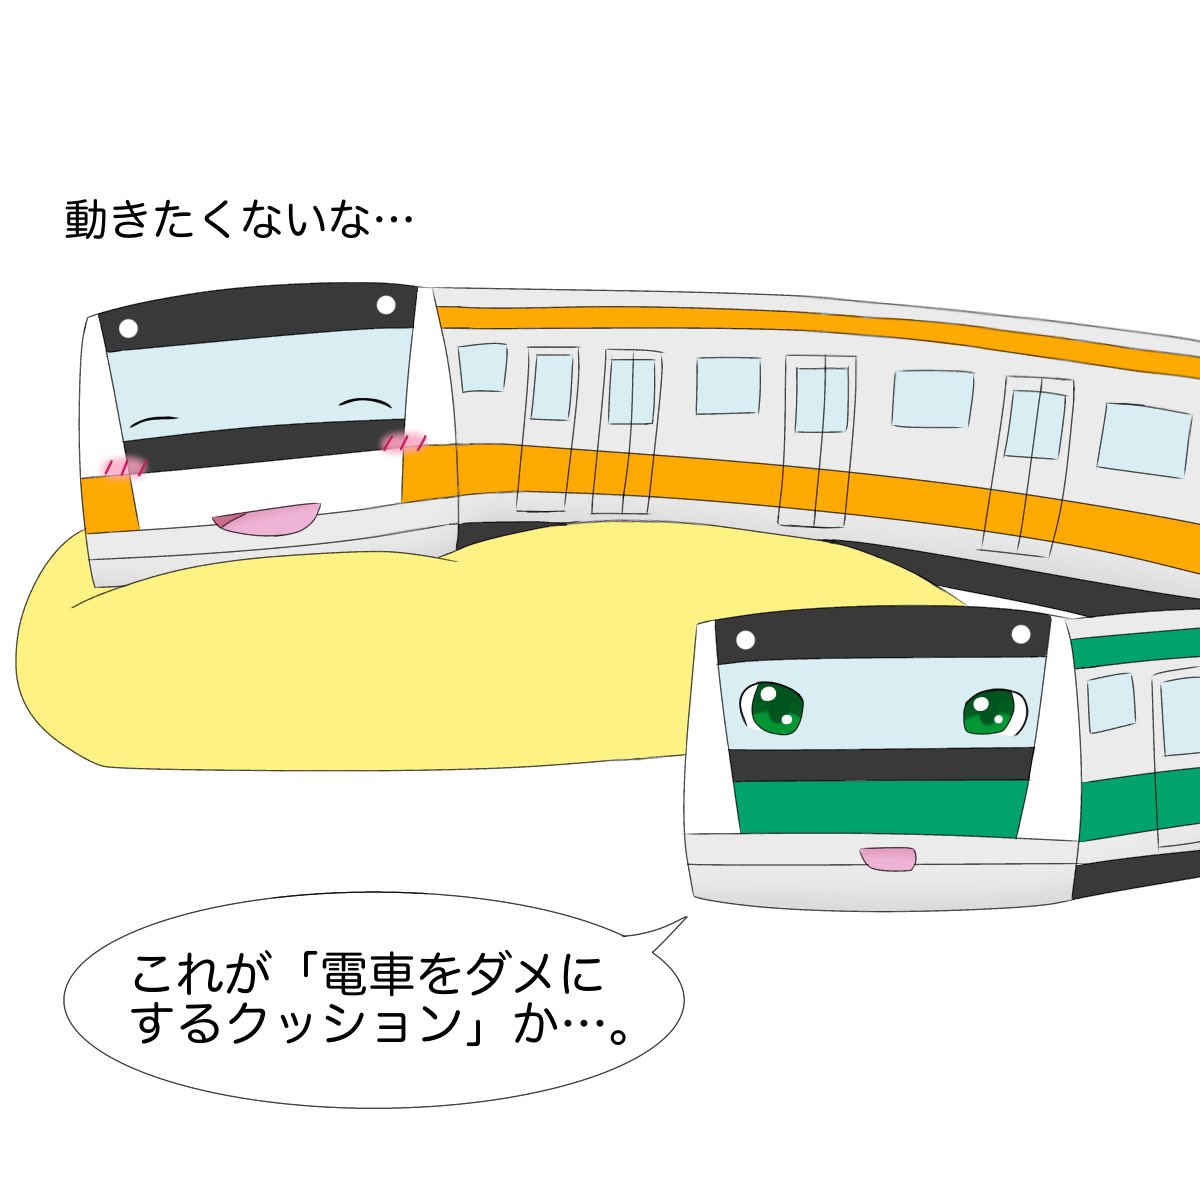 Azuhana V Twitter 埼京線vs電車をダメにするクッション 埼京線 中央線 E233系 イラスト 電車イラスト 漫画 4コマ漫画